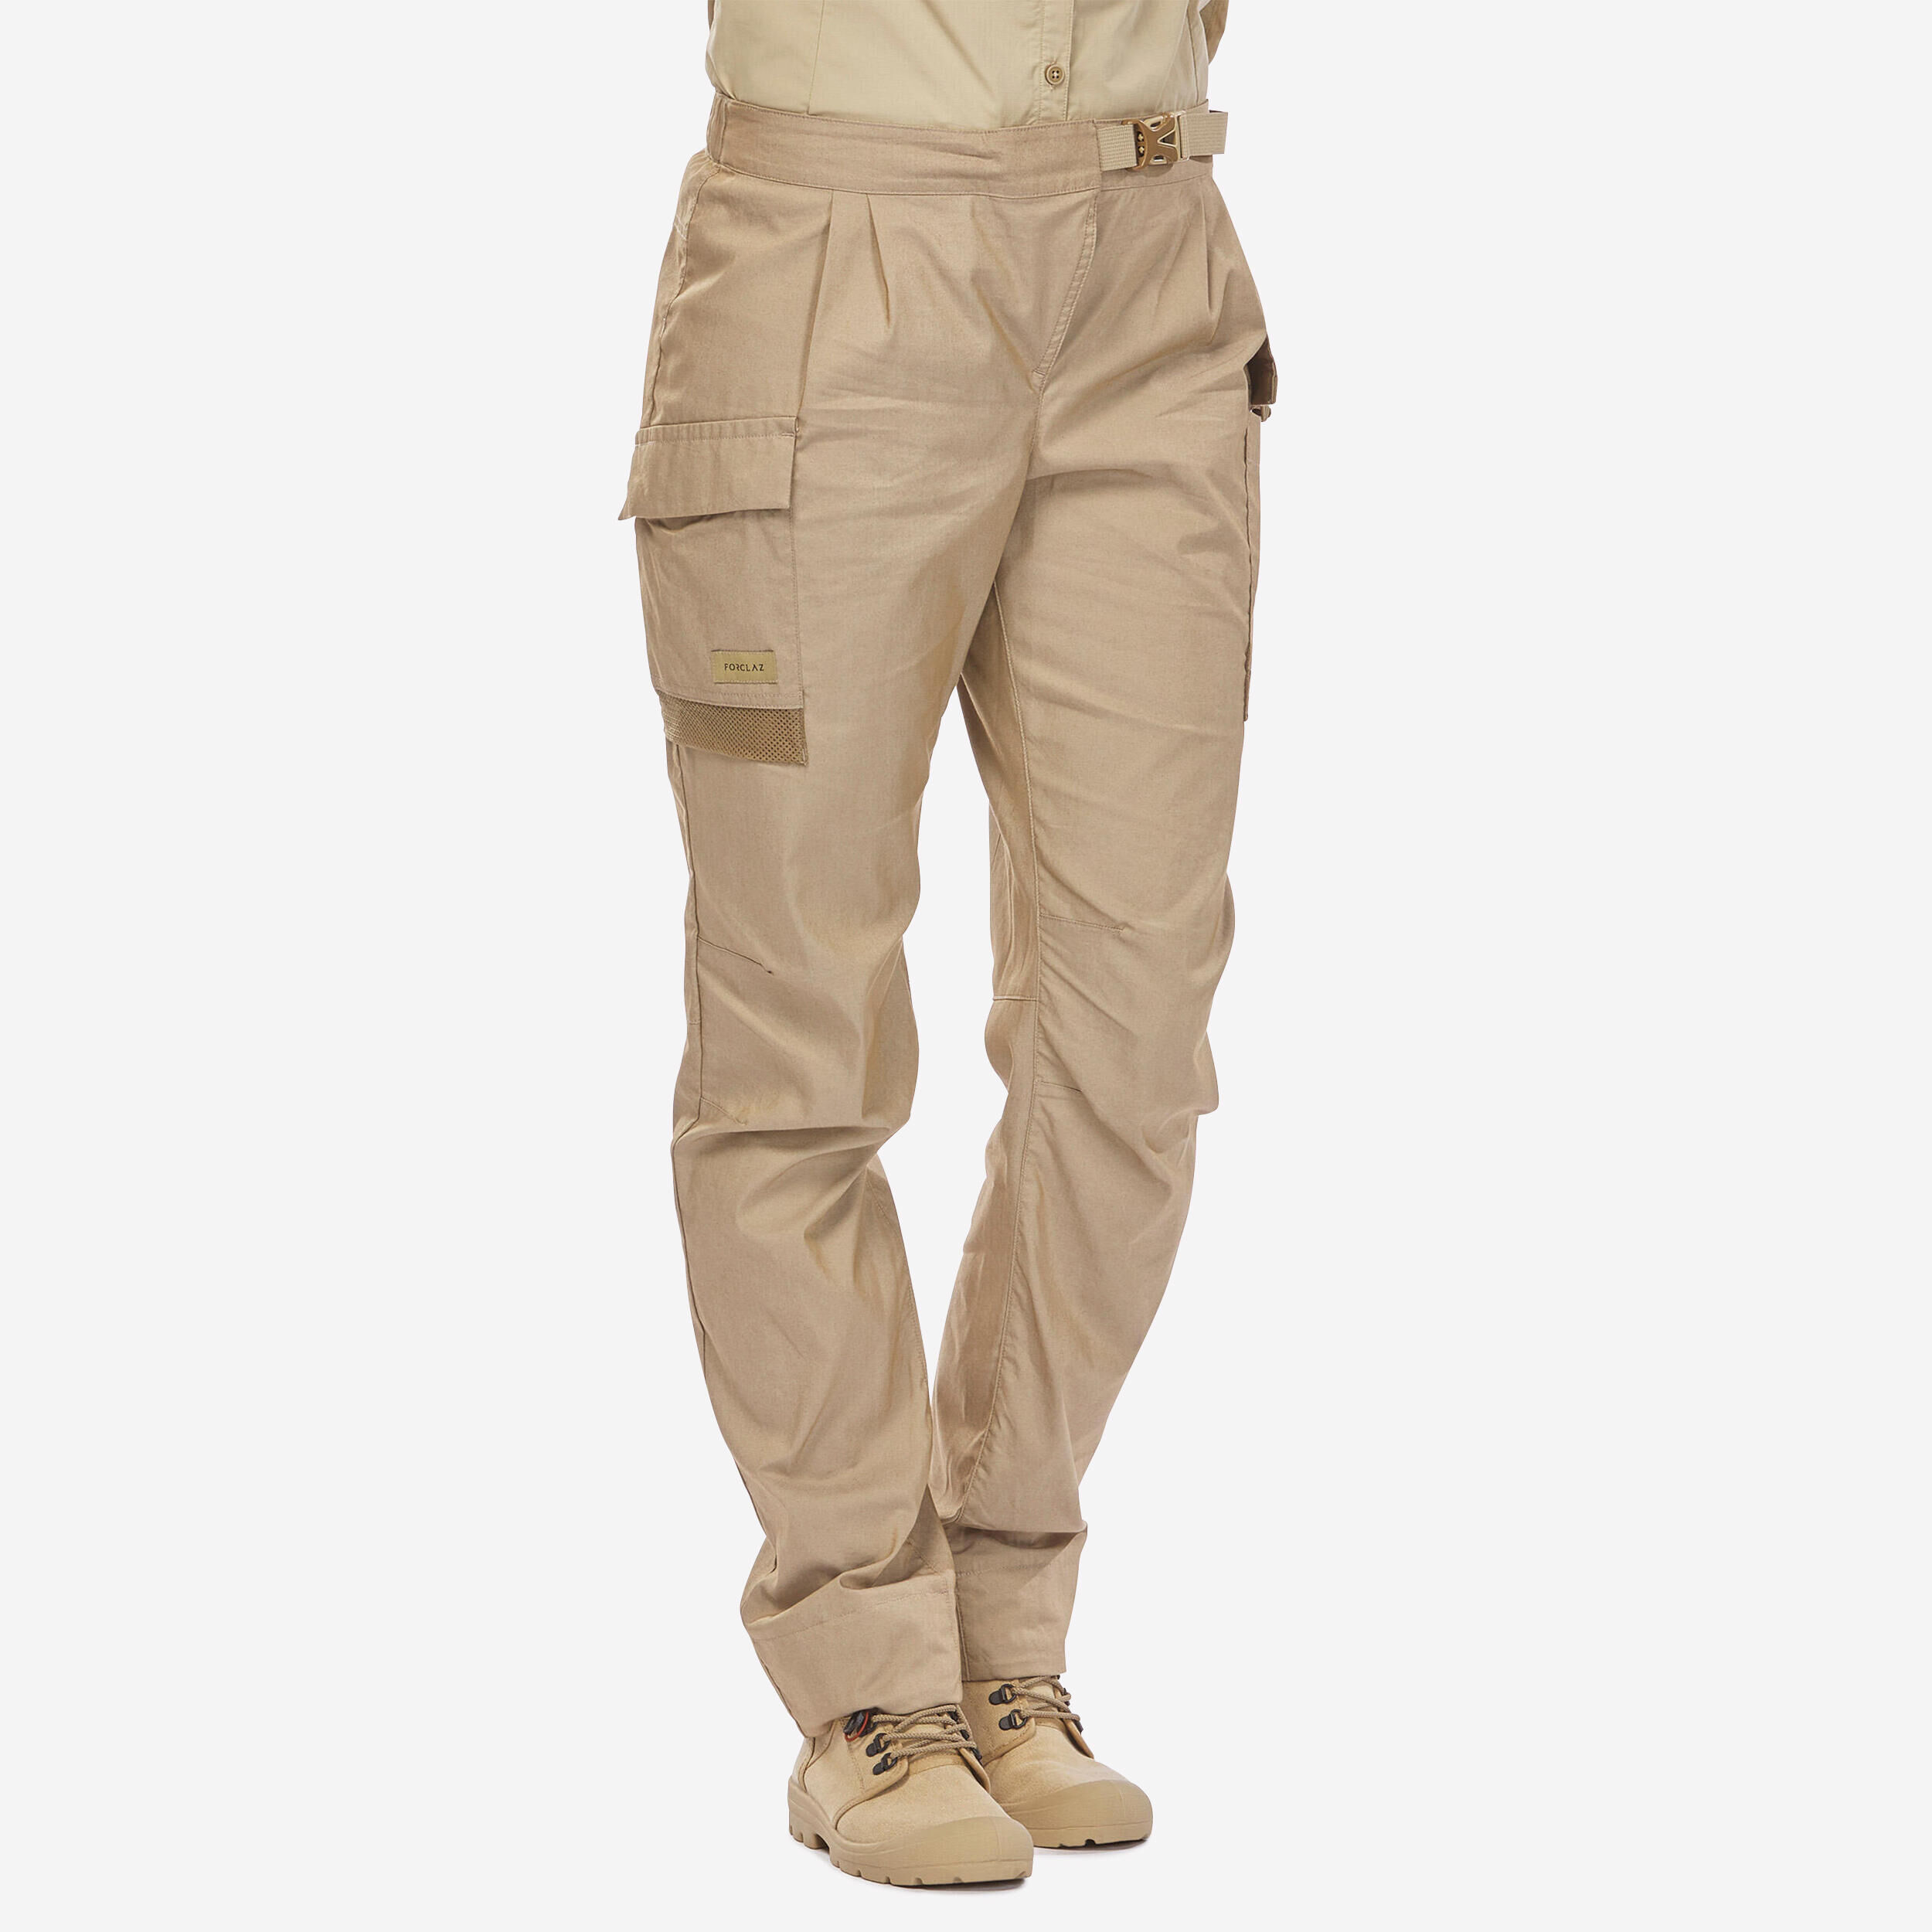 FORCLAZ Women’s Anti-UV Desert Trekking Trousers DESERT 900  Beige